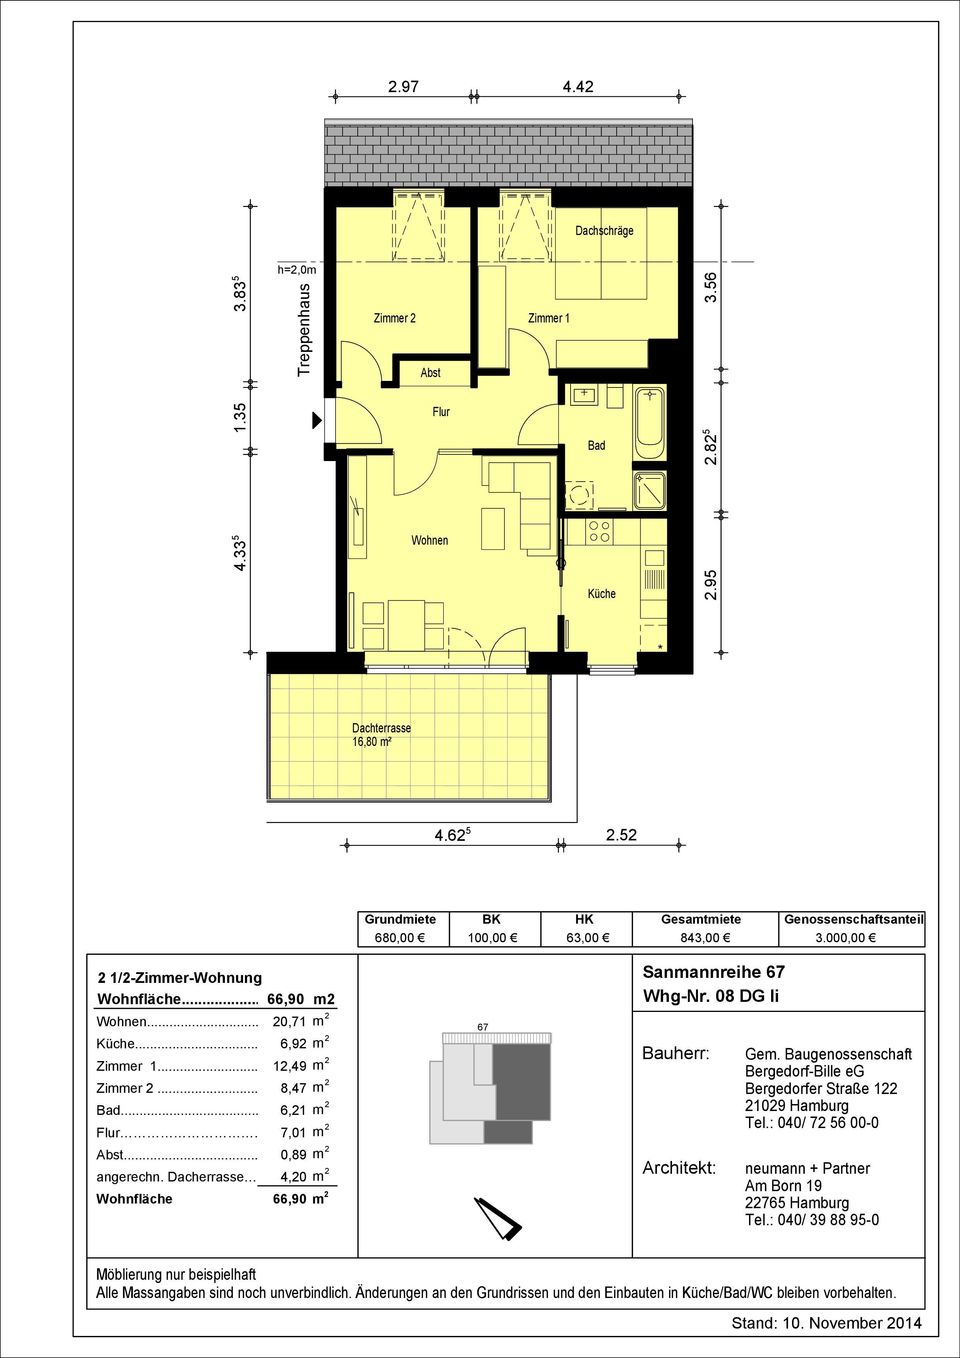 000,00 2 1/2-Zimmer-Wohnung Wohnfläche... 66,90 m2... 20,71 m 2... 6,92 m 2...12,49 m 2.